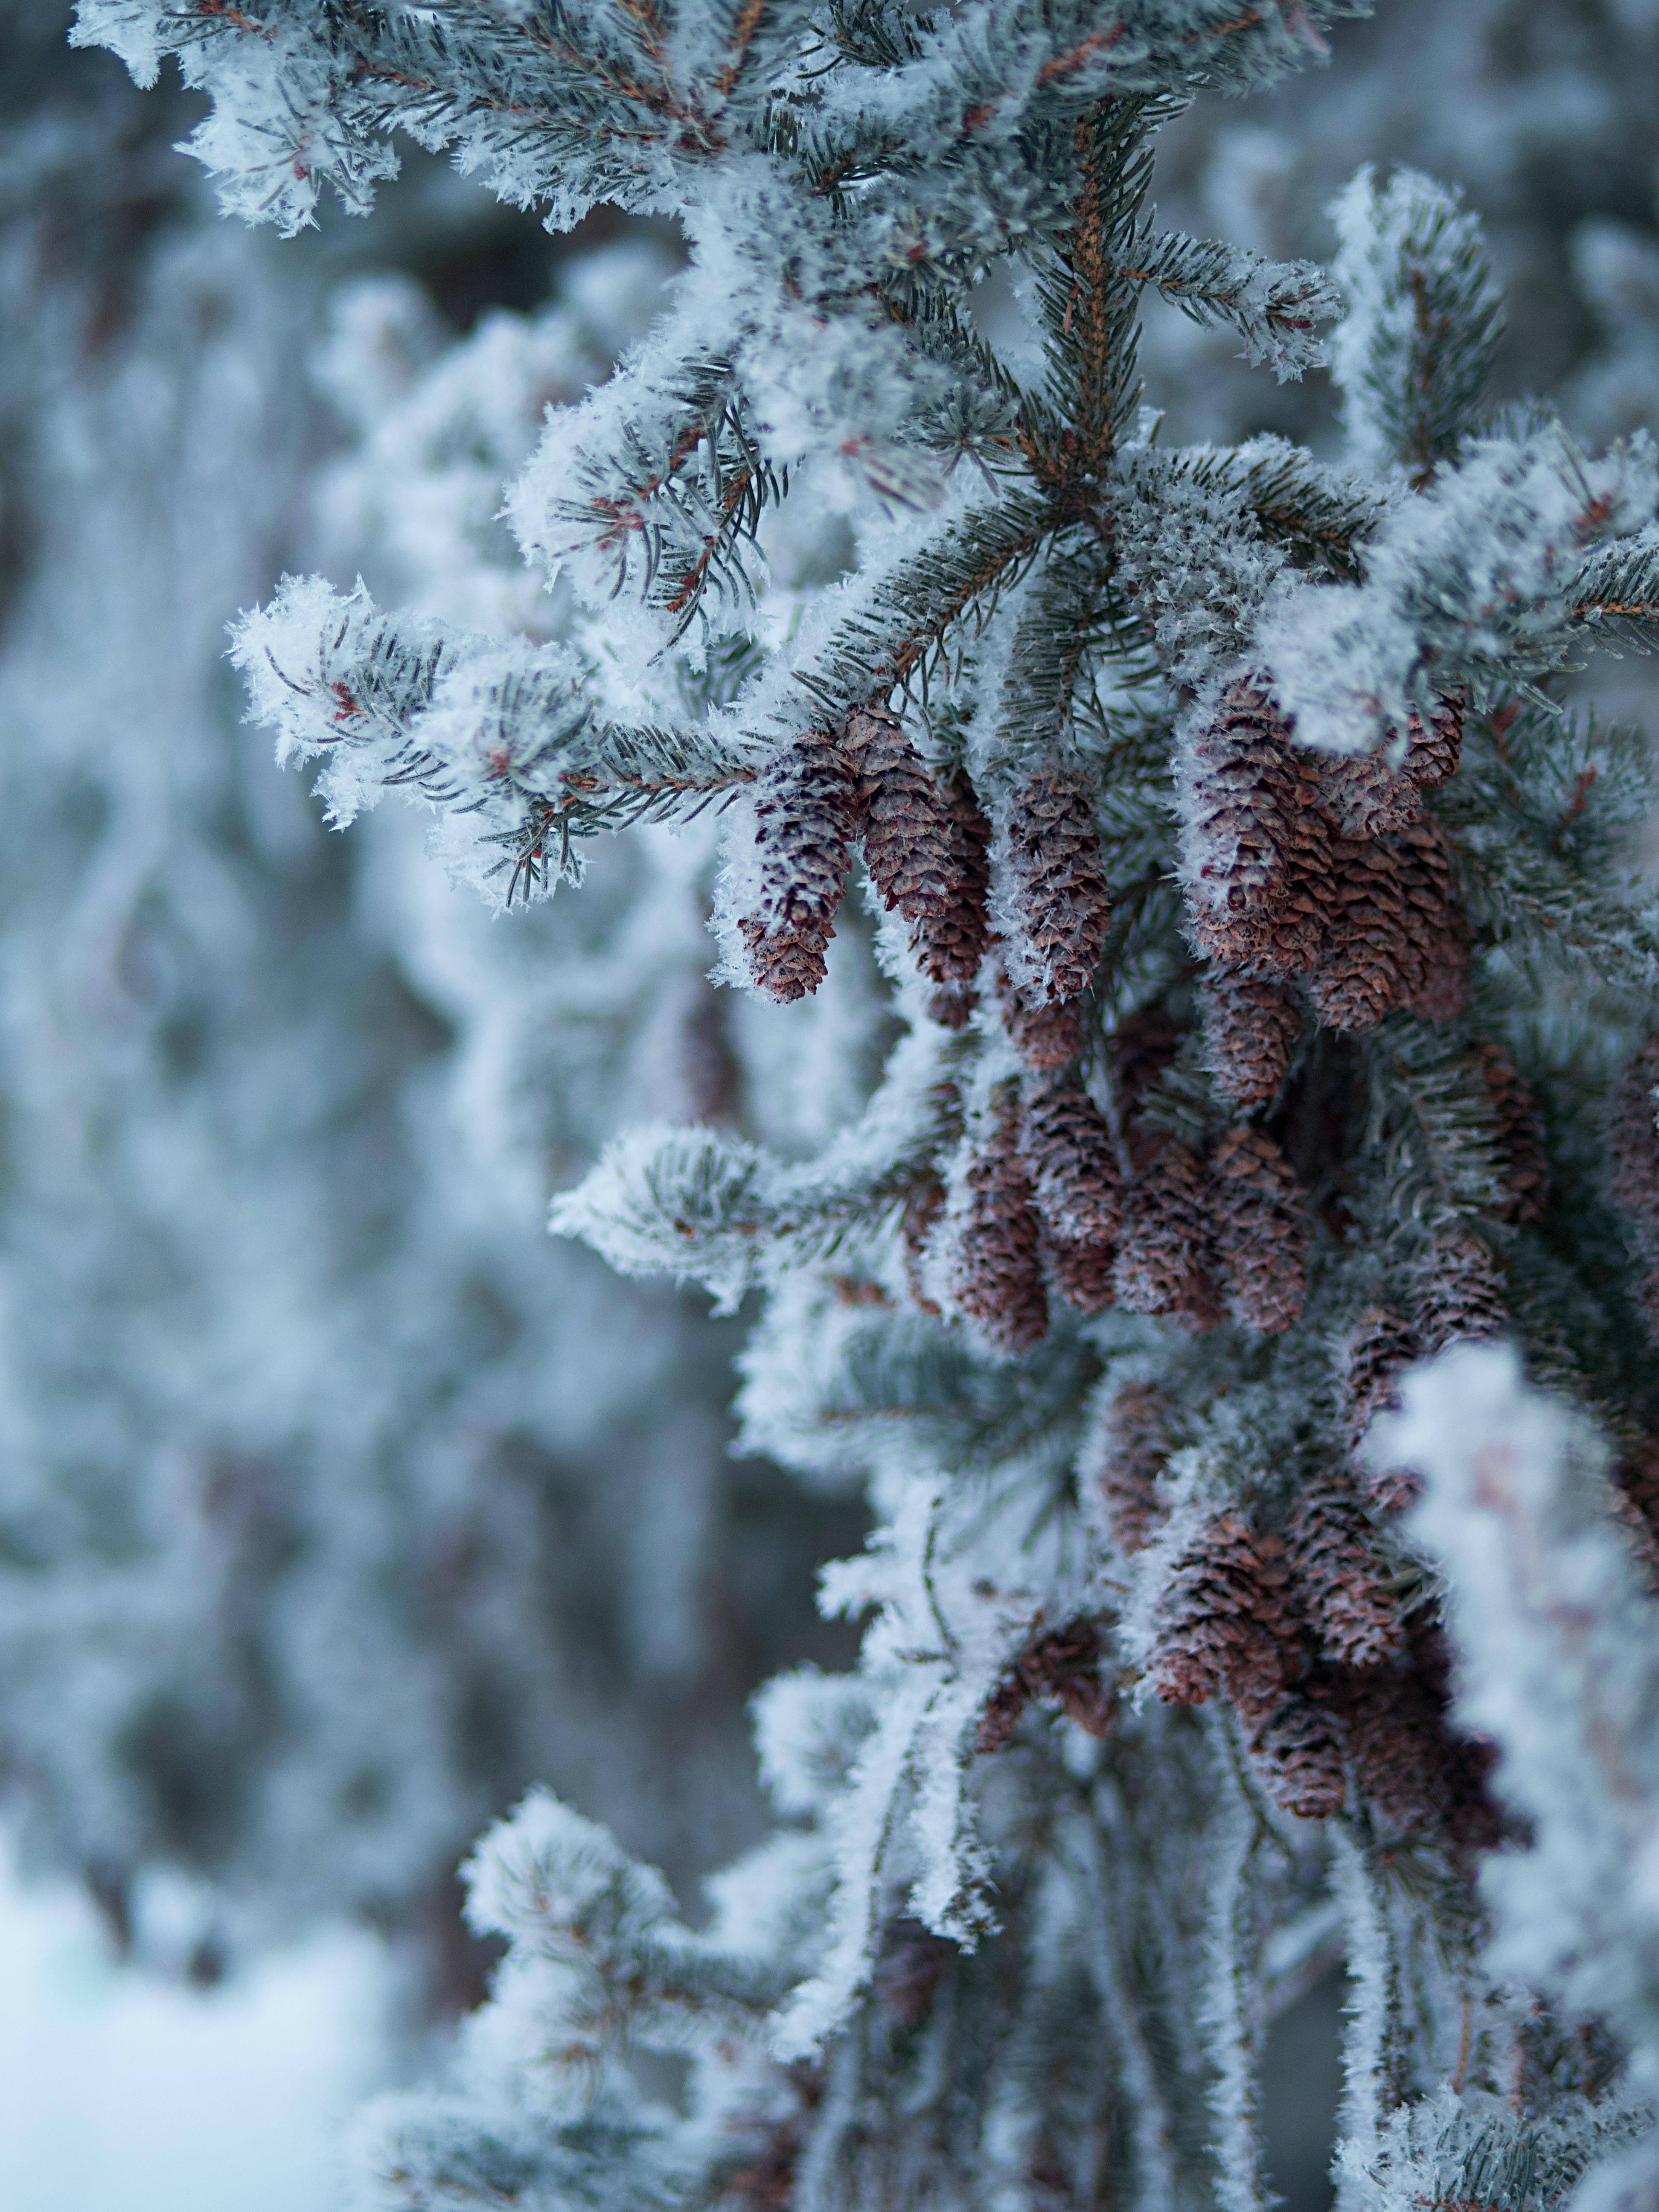 картинки : дерево, снег, зима, весна, Погода, время года, Австрия,  Изобразительное искусство, Gmunden, Ober Sterreich 4199x3305 - - 421910 -  красивые картинки - PxHere